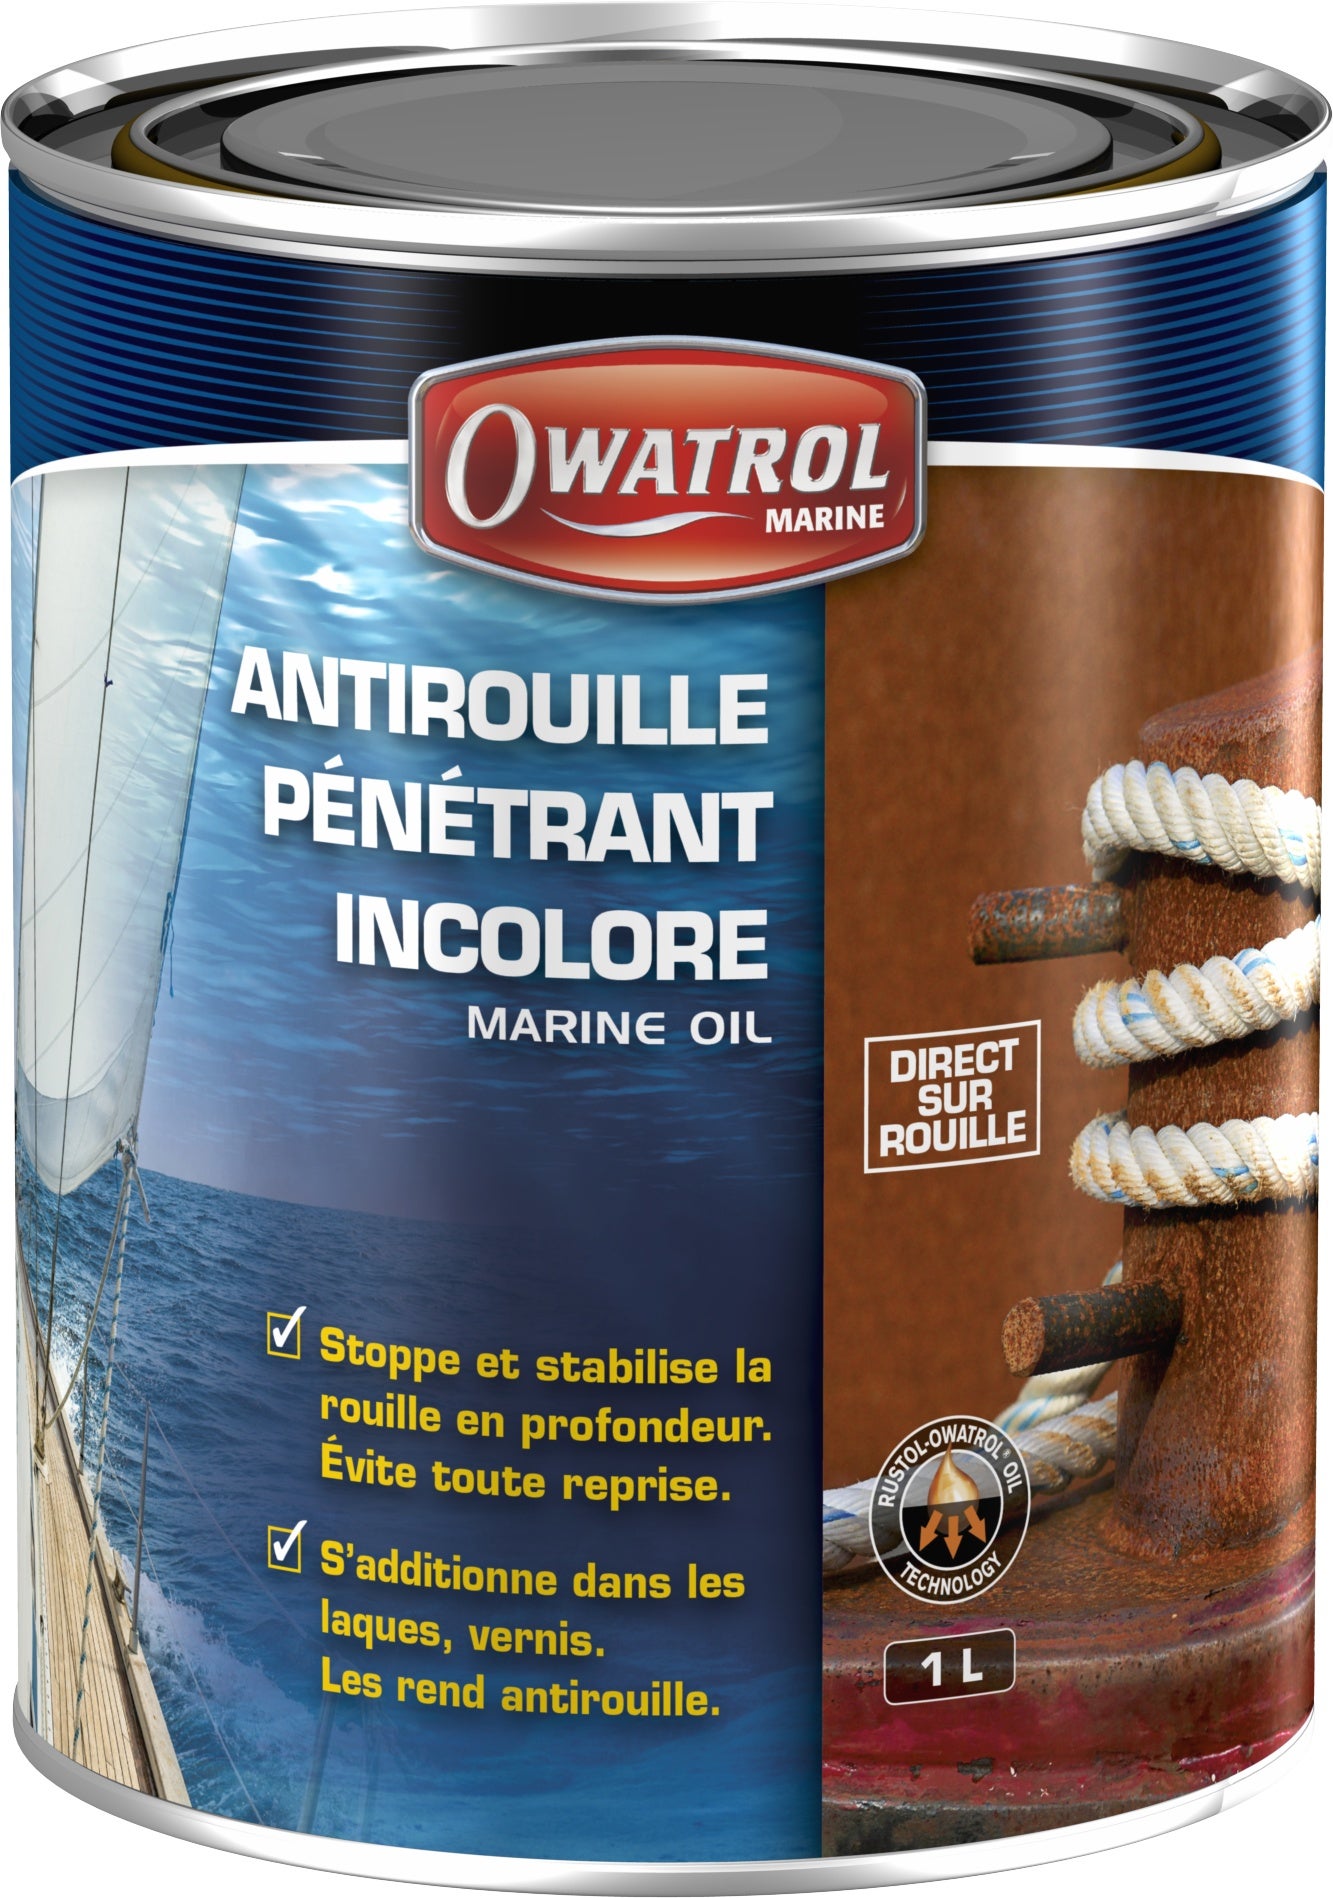 Antirouille pénétrant incolore Owatrol MARINE OIL 1 litre